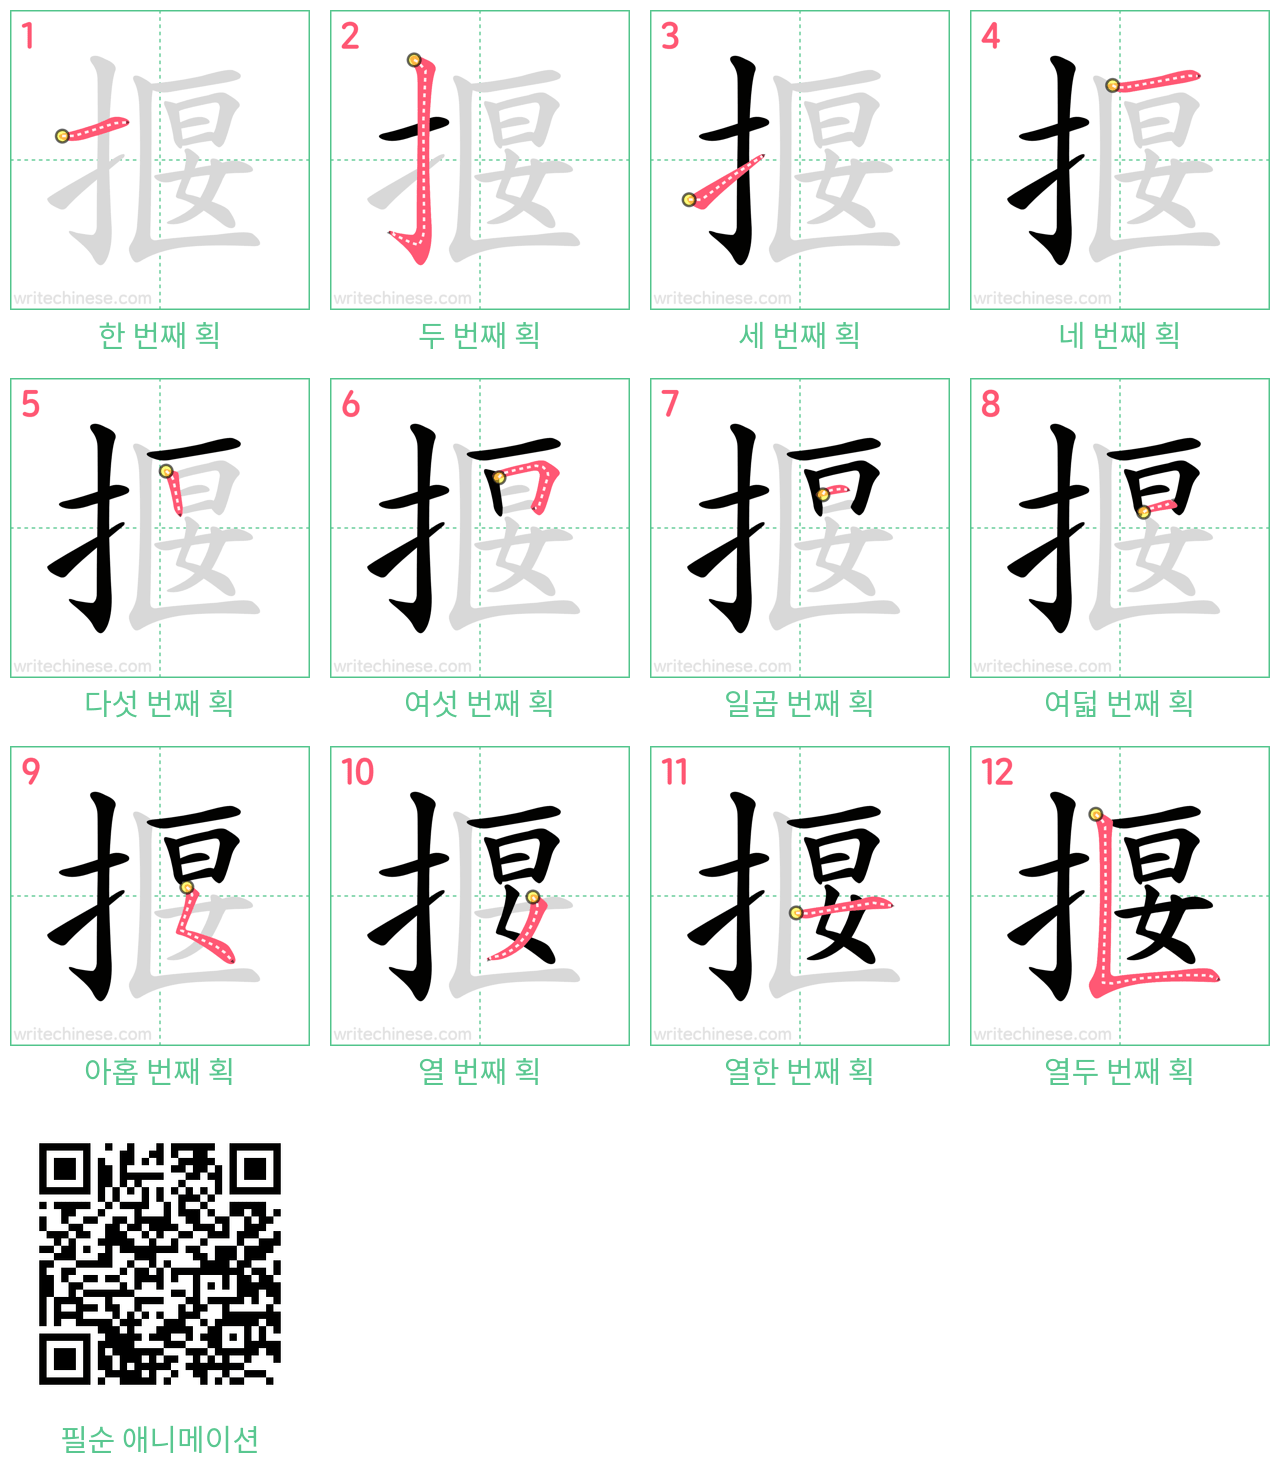 揠 step-by-step stroke order diagrams